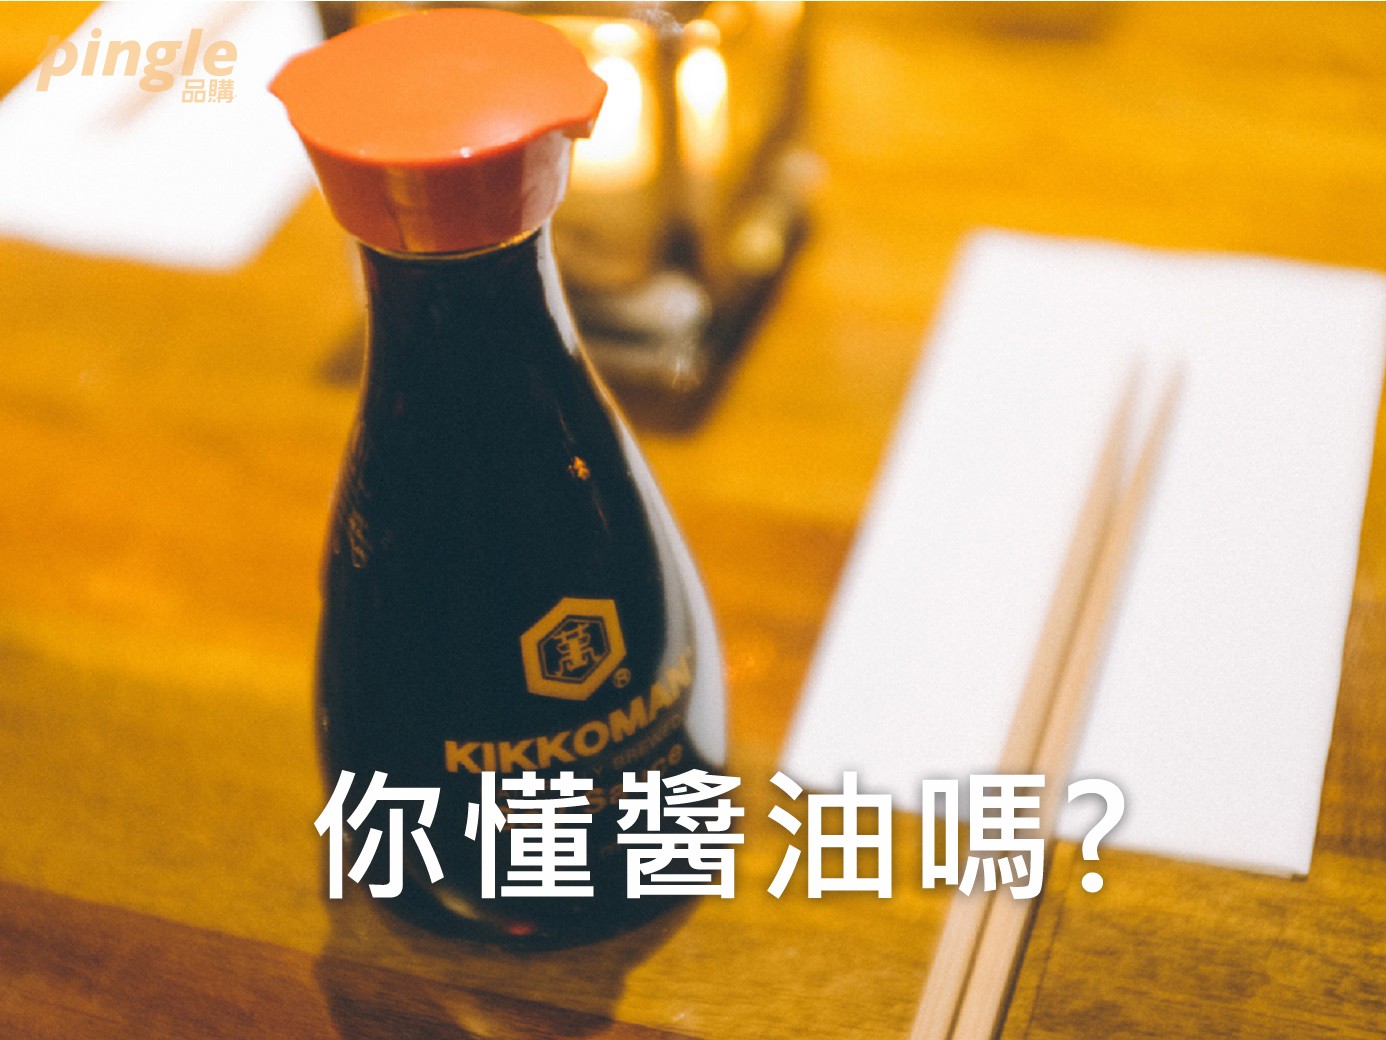 「柴米油鹽醬醋茶」。醬油在中華飲食文化中，佔有不可或缺的位置。 但賣場醬油百百種，你都怎麼挑選醬油呢